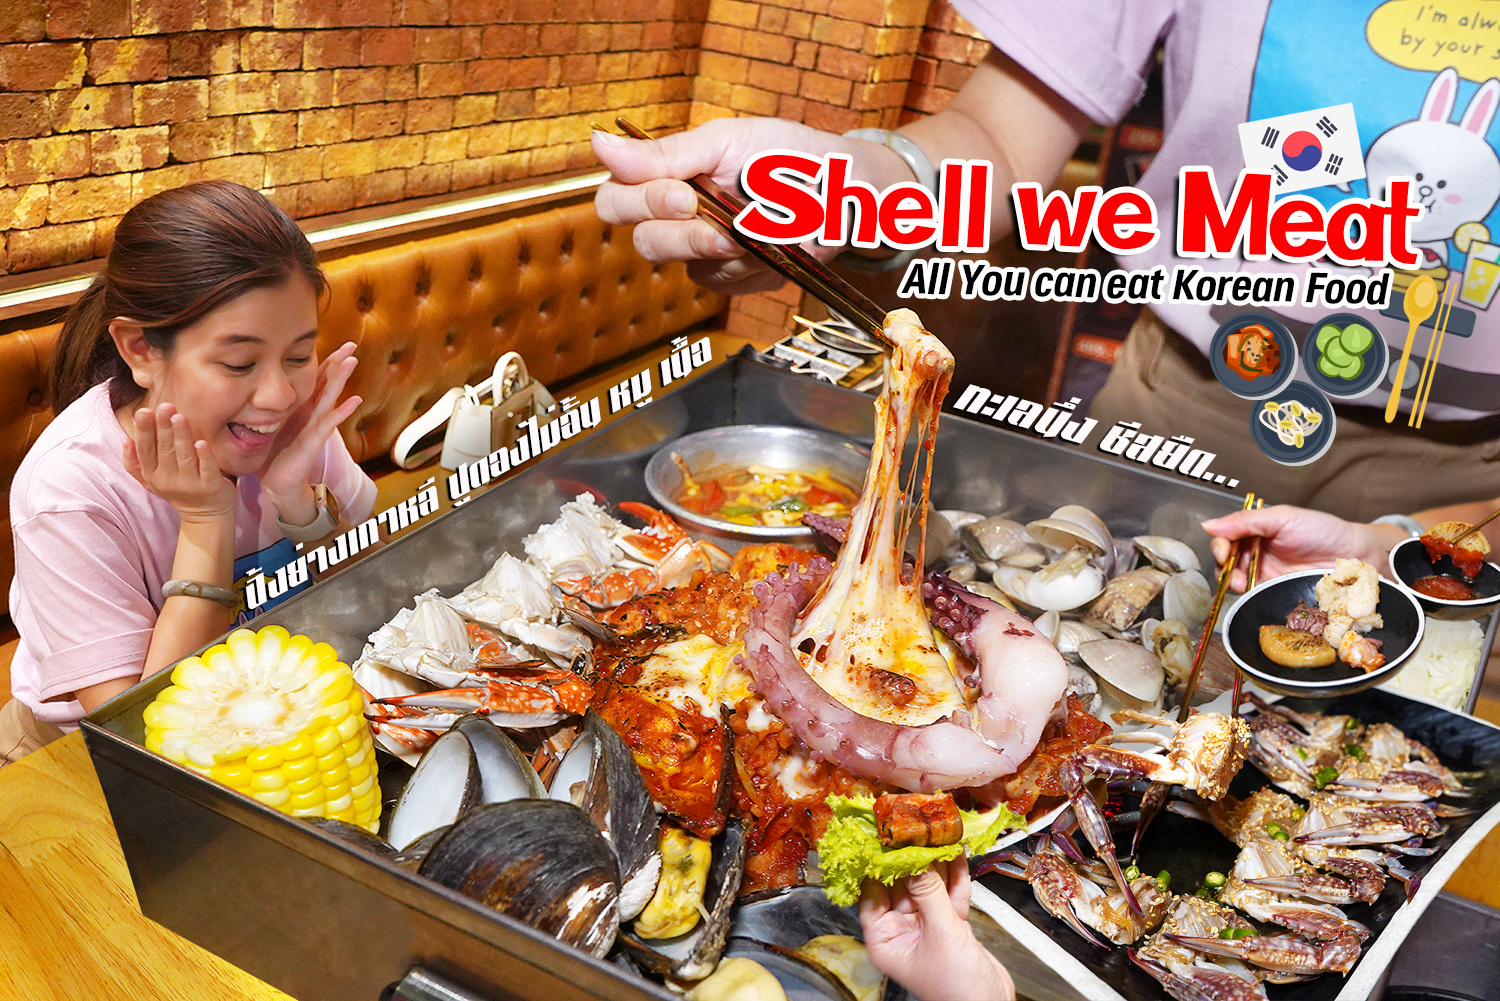 ปิ้งย่างเกาหลี กุ้งดอง ปูดองไม่อั้น หมู เนื้อ ไส้ใหญ่ (อร่อยมาก) ไส้อ่อน ทะเลนึ่ง มาเต็มขนาดนี้ ไม่ไป !!! Shell We Meat ไม่ได้แล้วมั้ง ^^